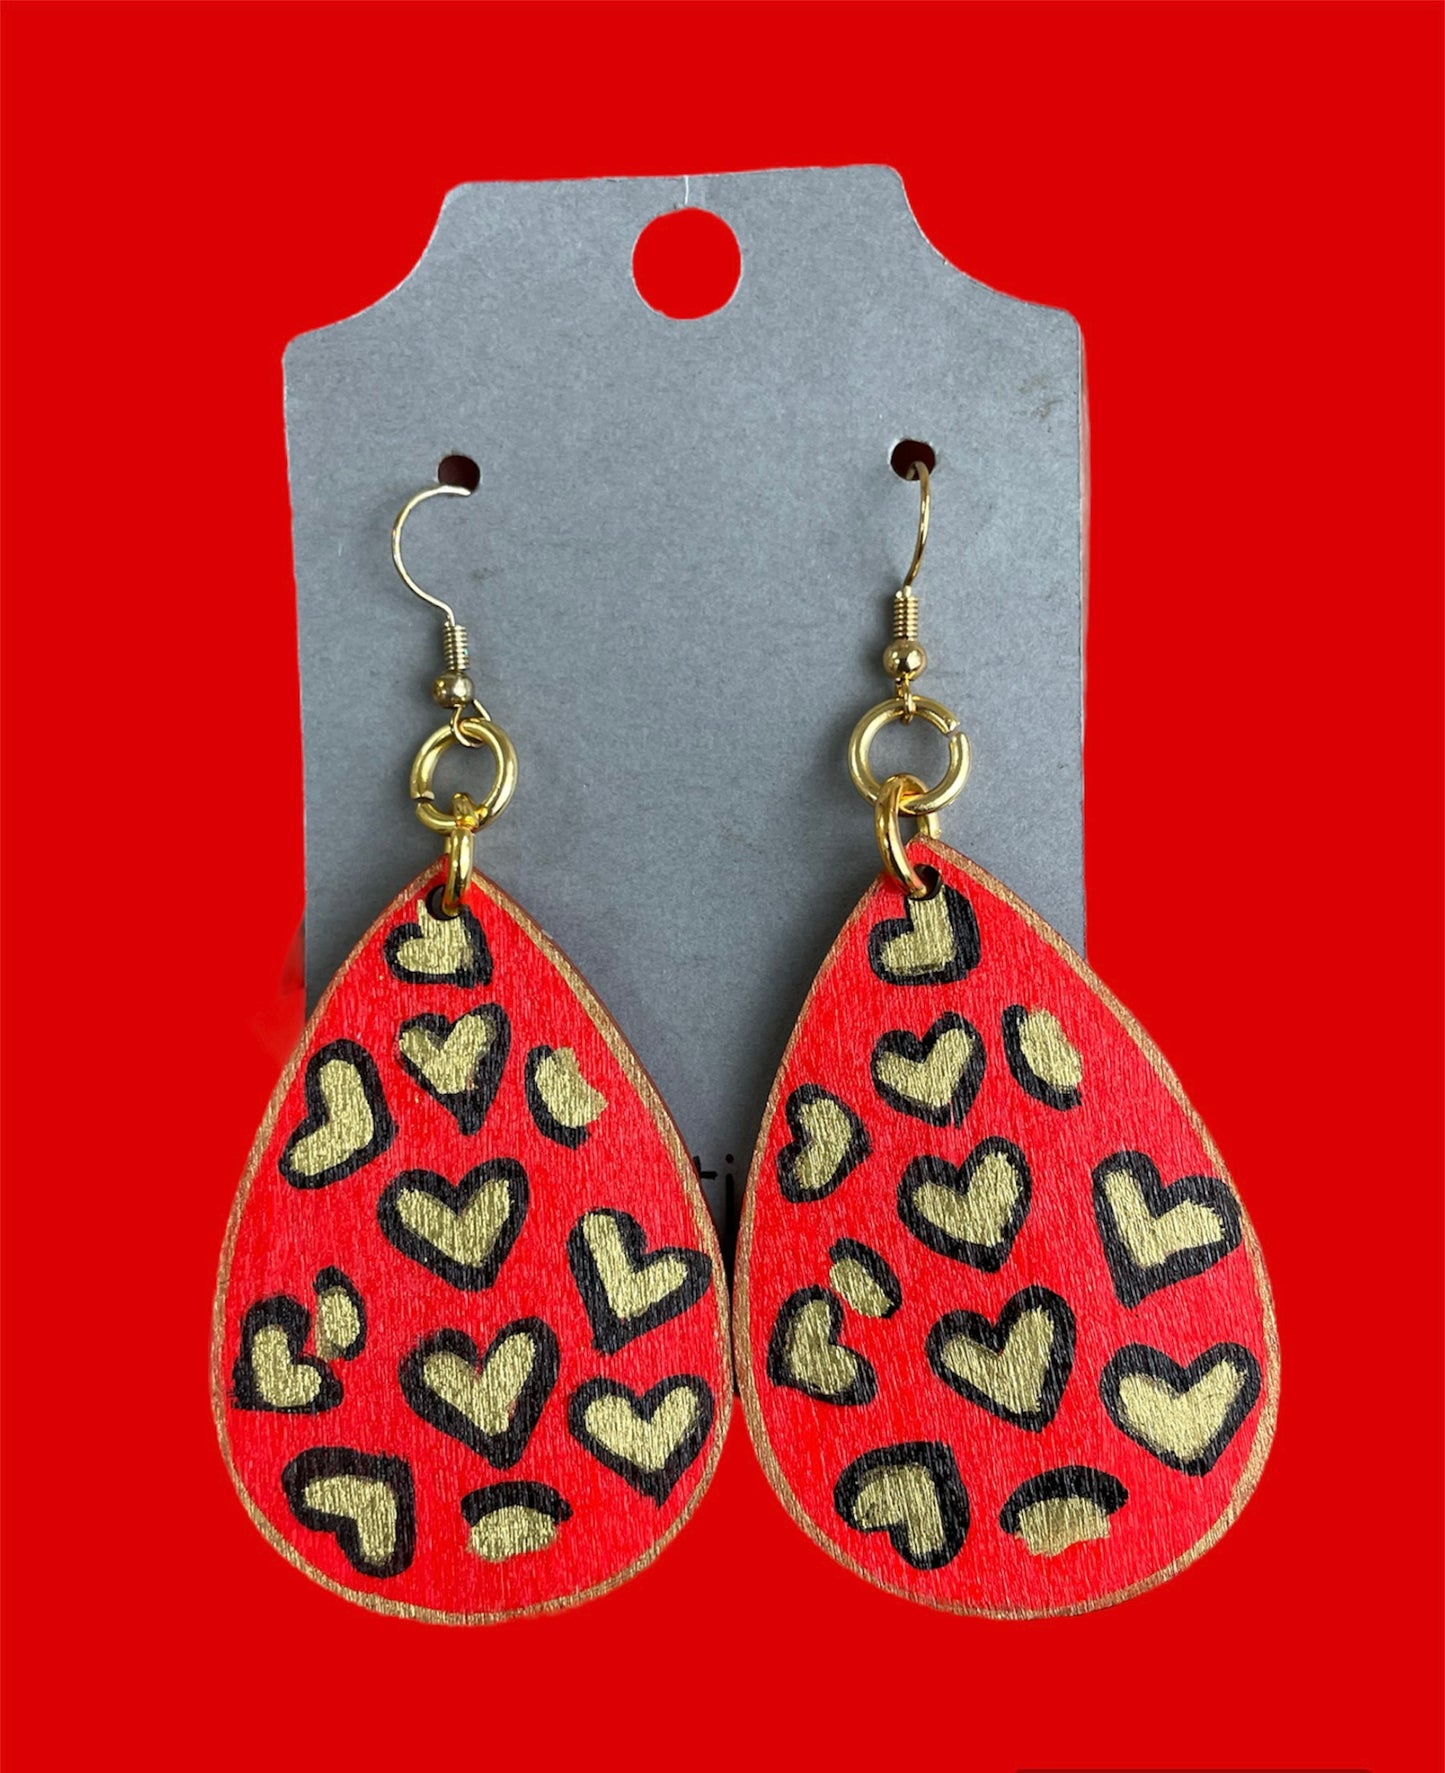 # 248 Red cheetah print teardrop earrings